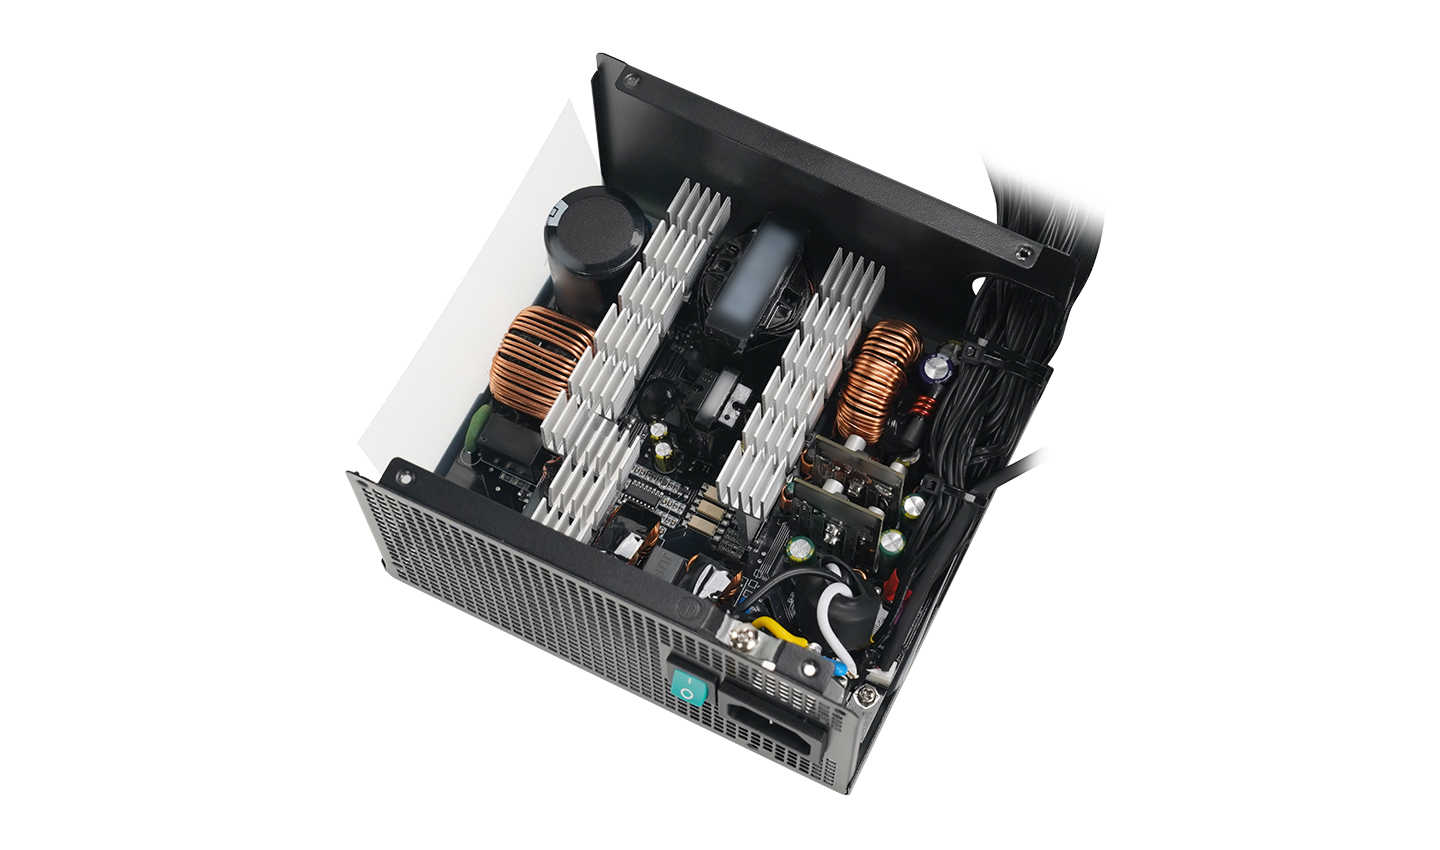 Блок питания Deepcool PL550D (ATX 3.0, 550W, PWM 120mm fan, Active PFC+DC to DC, 80+ BRONZE) RET